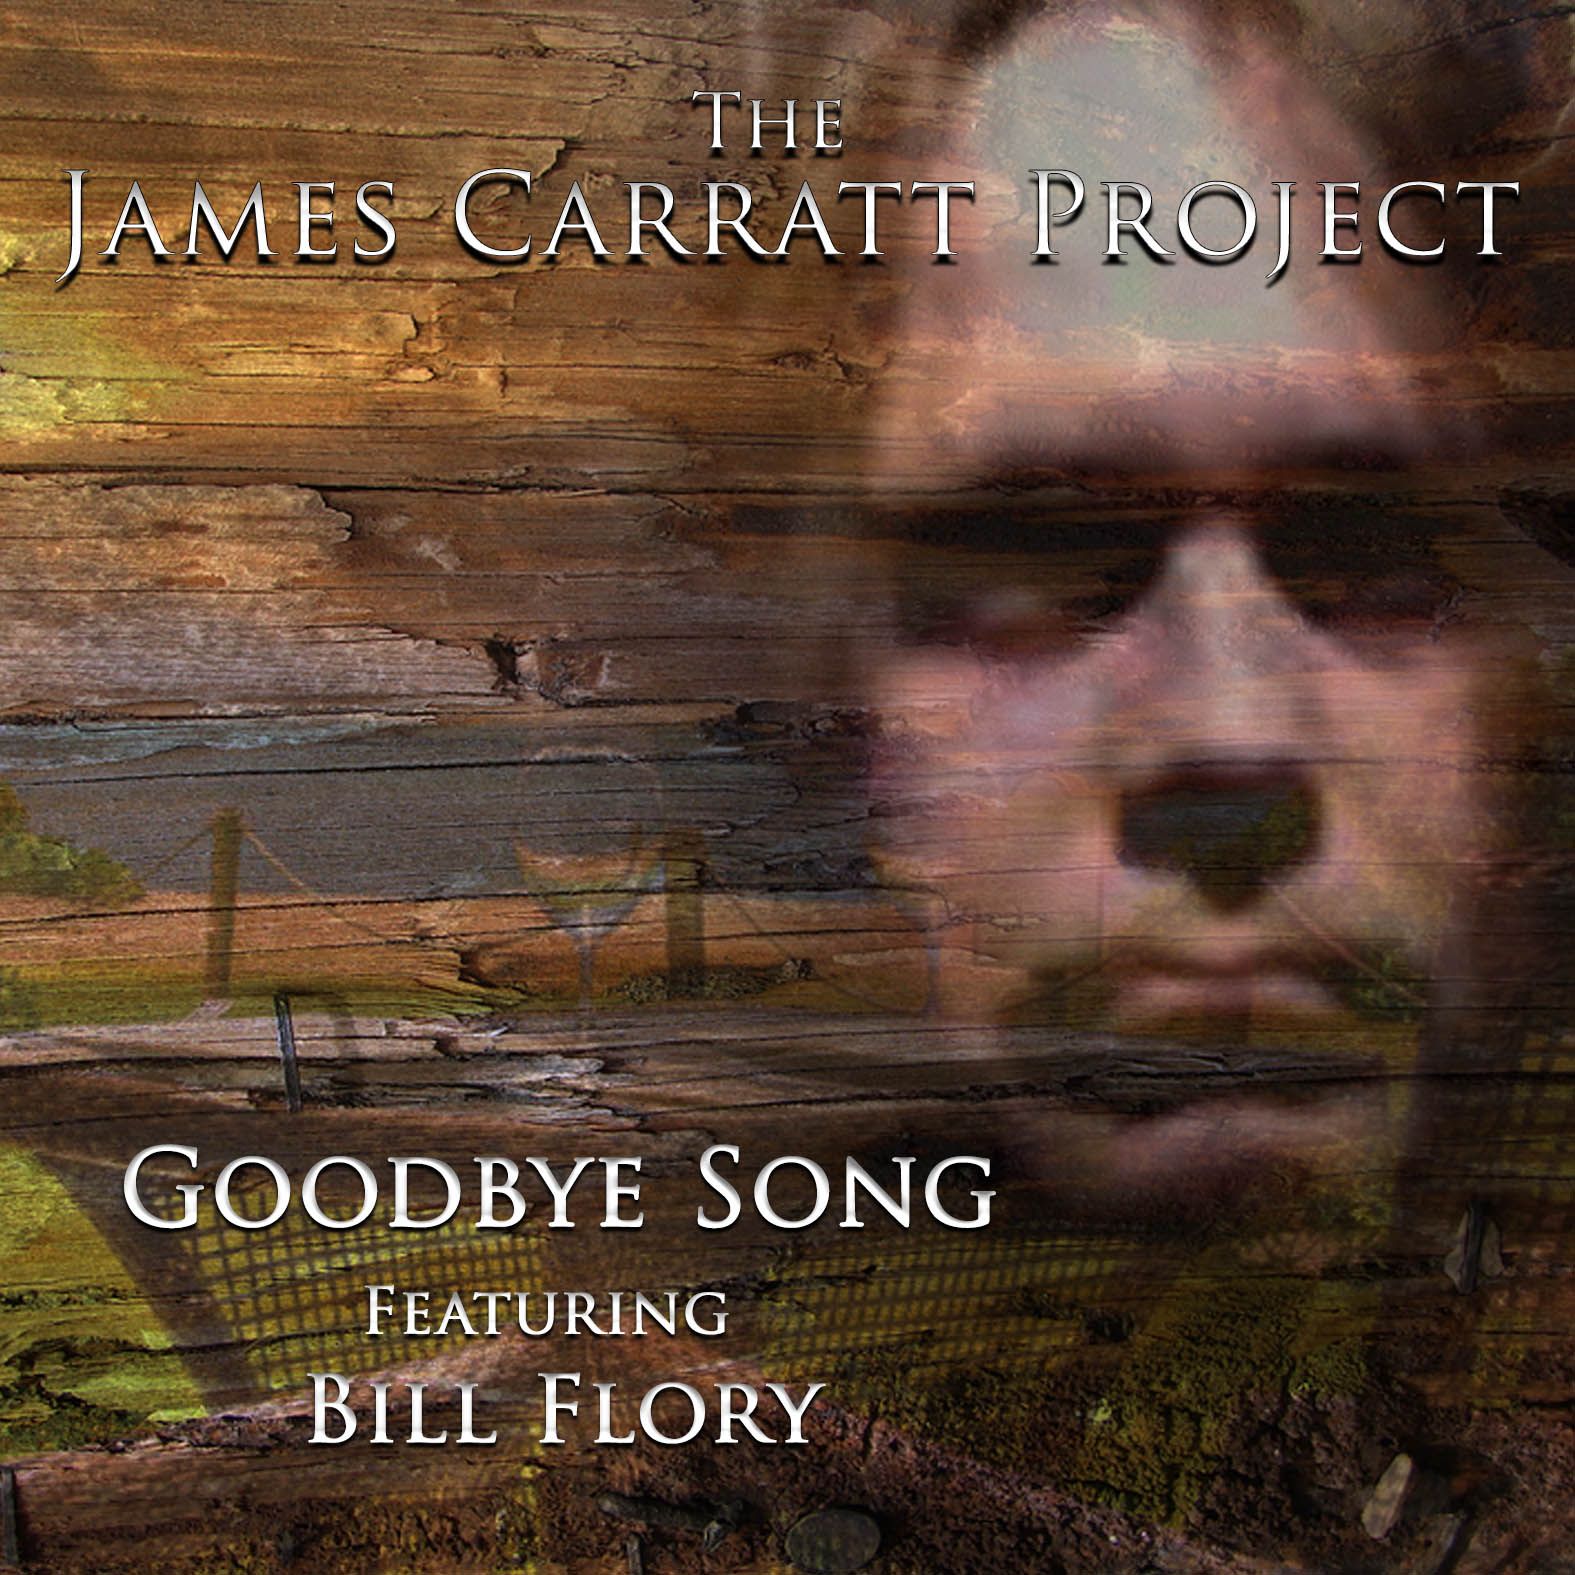 The James Carratt Project